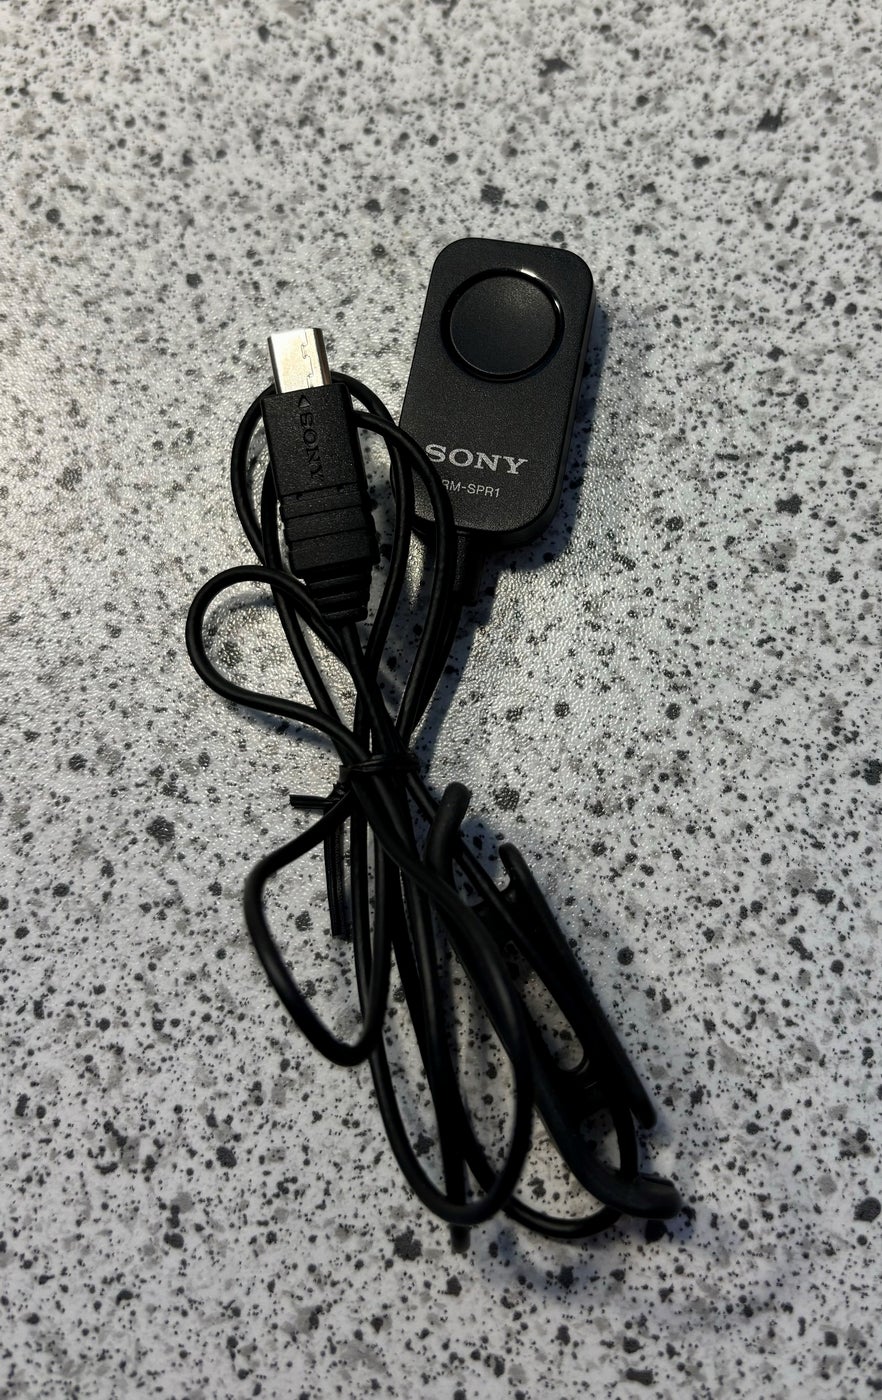 Sony, RM-SPR1